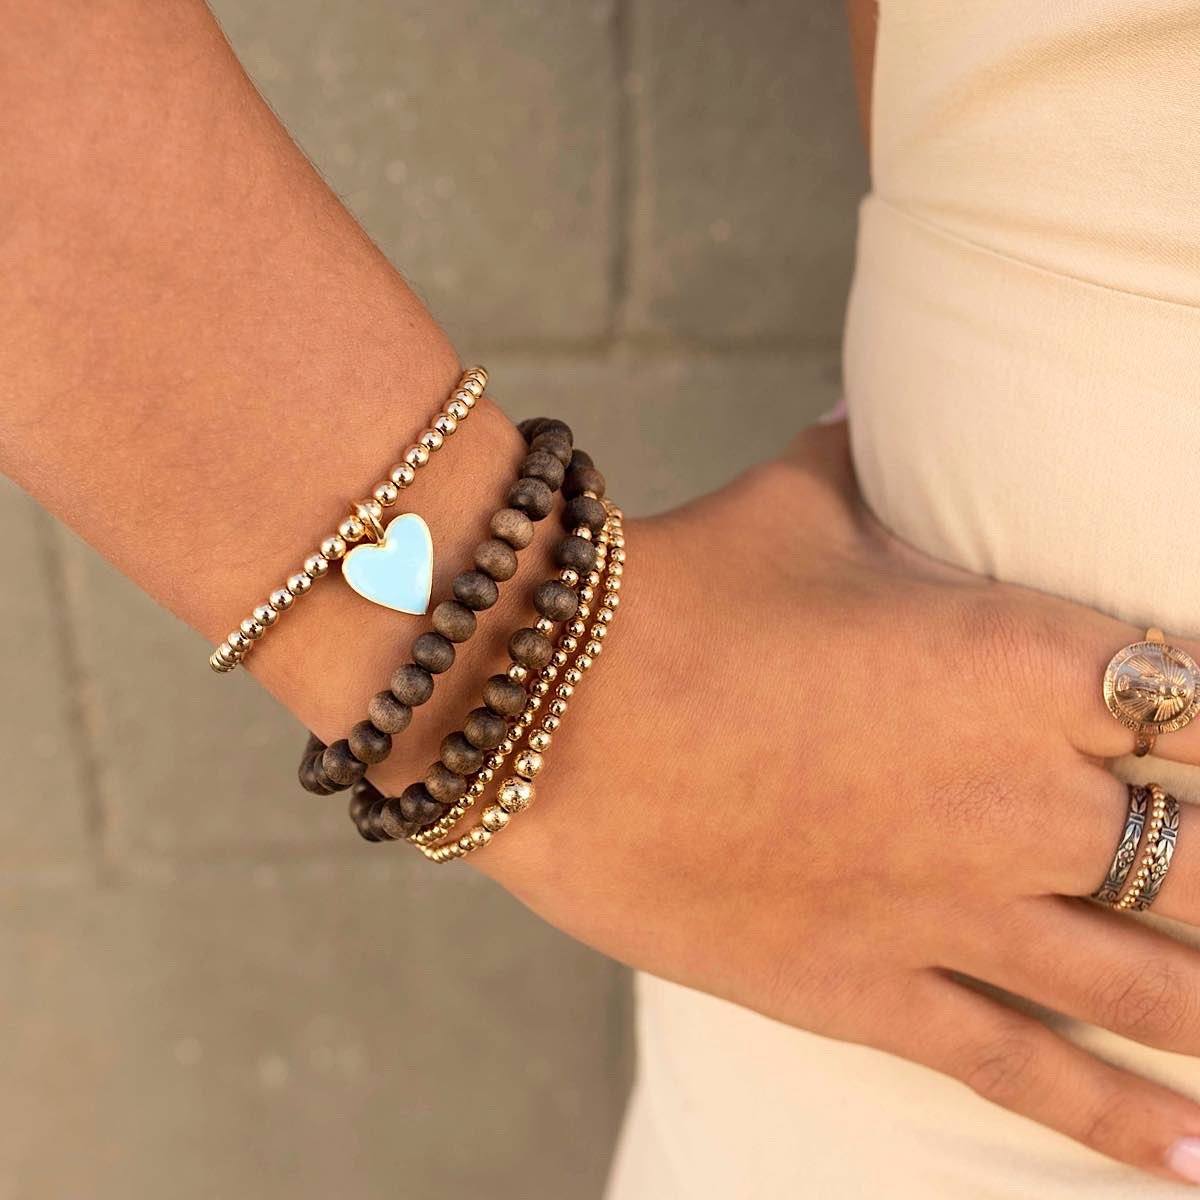 Baby Blue Enamel Heart Bead Bracelet Gold Fill - 5.75 | IsabelleGraceJewelry